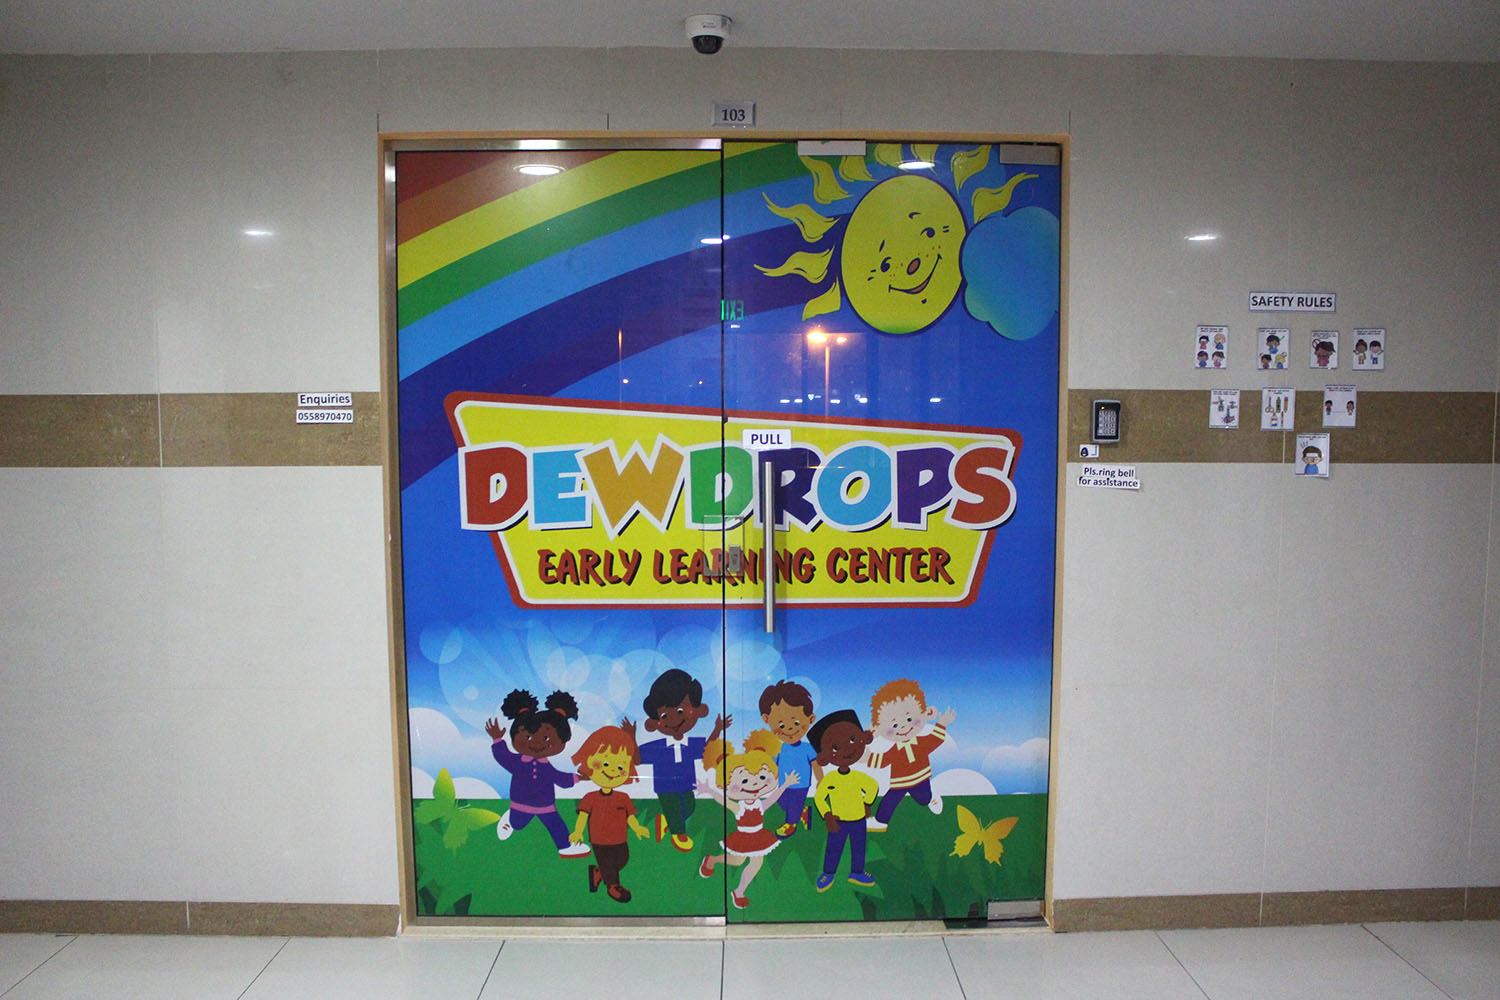 مركز ديودروبس لتعليم الطفولة المبكرة